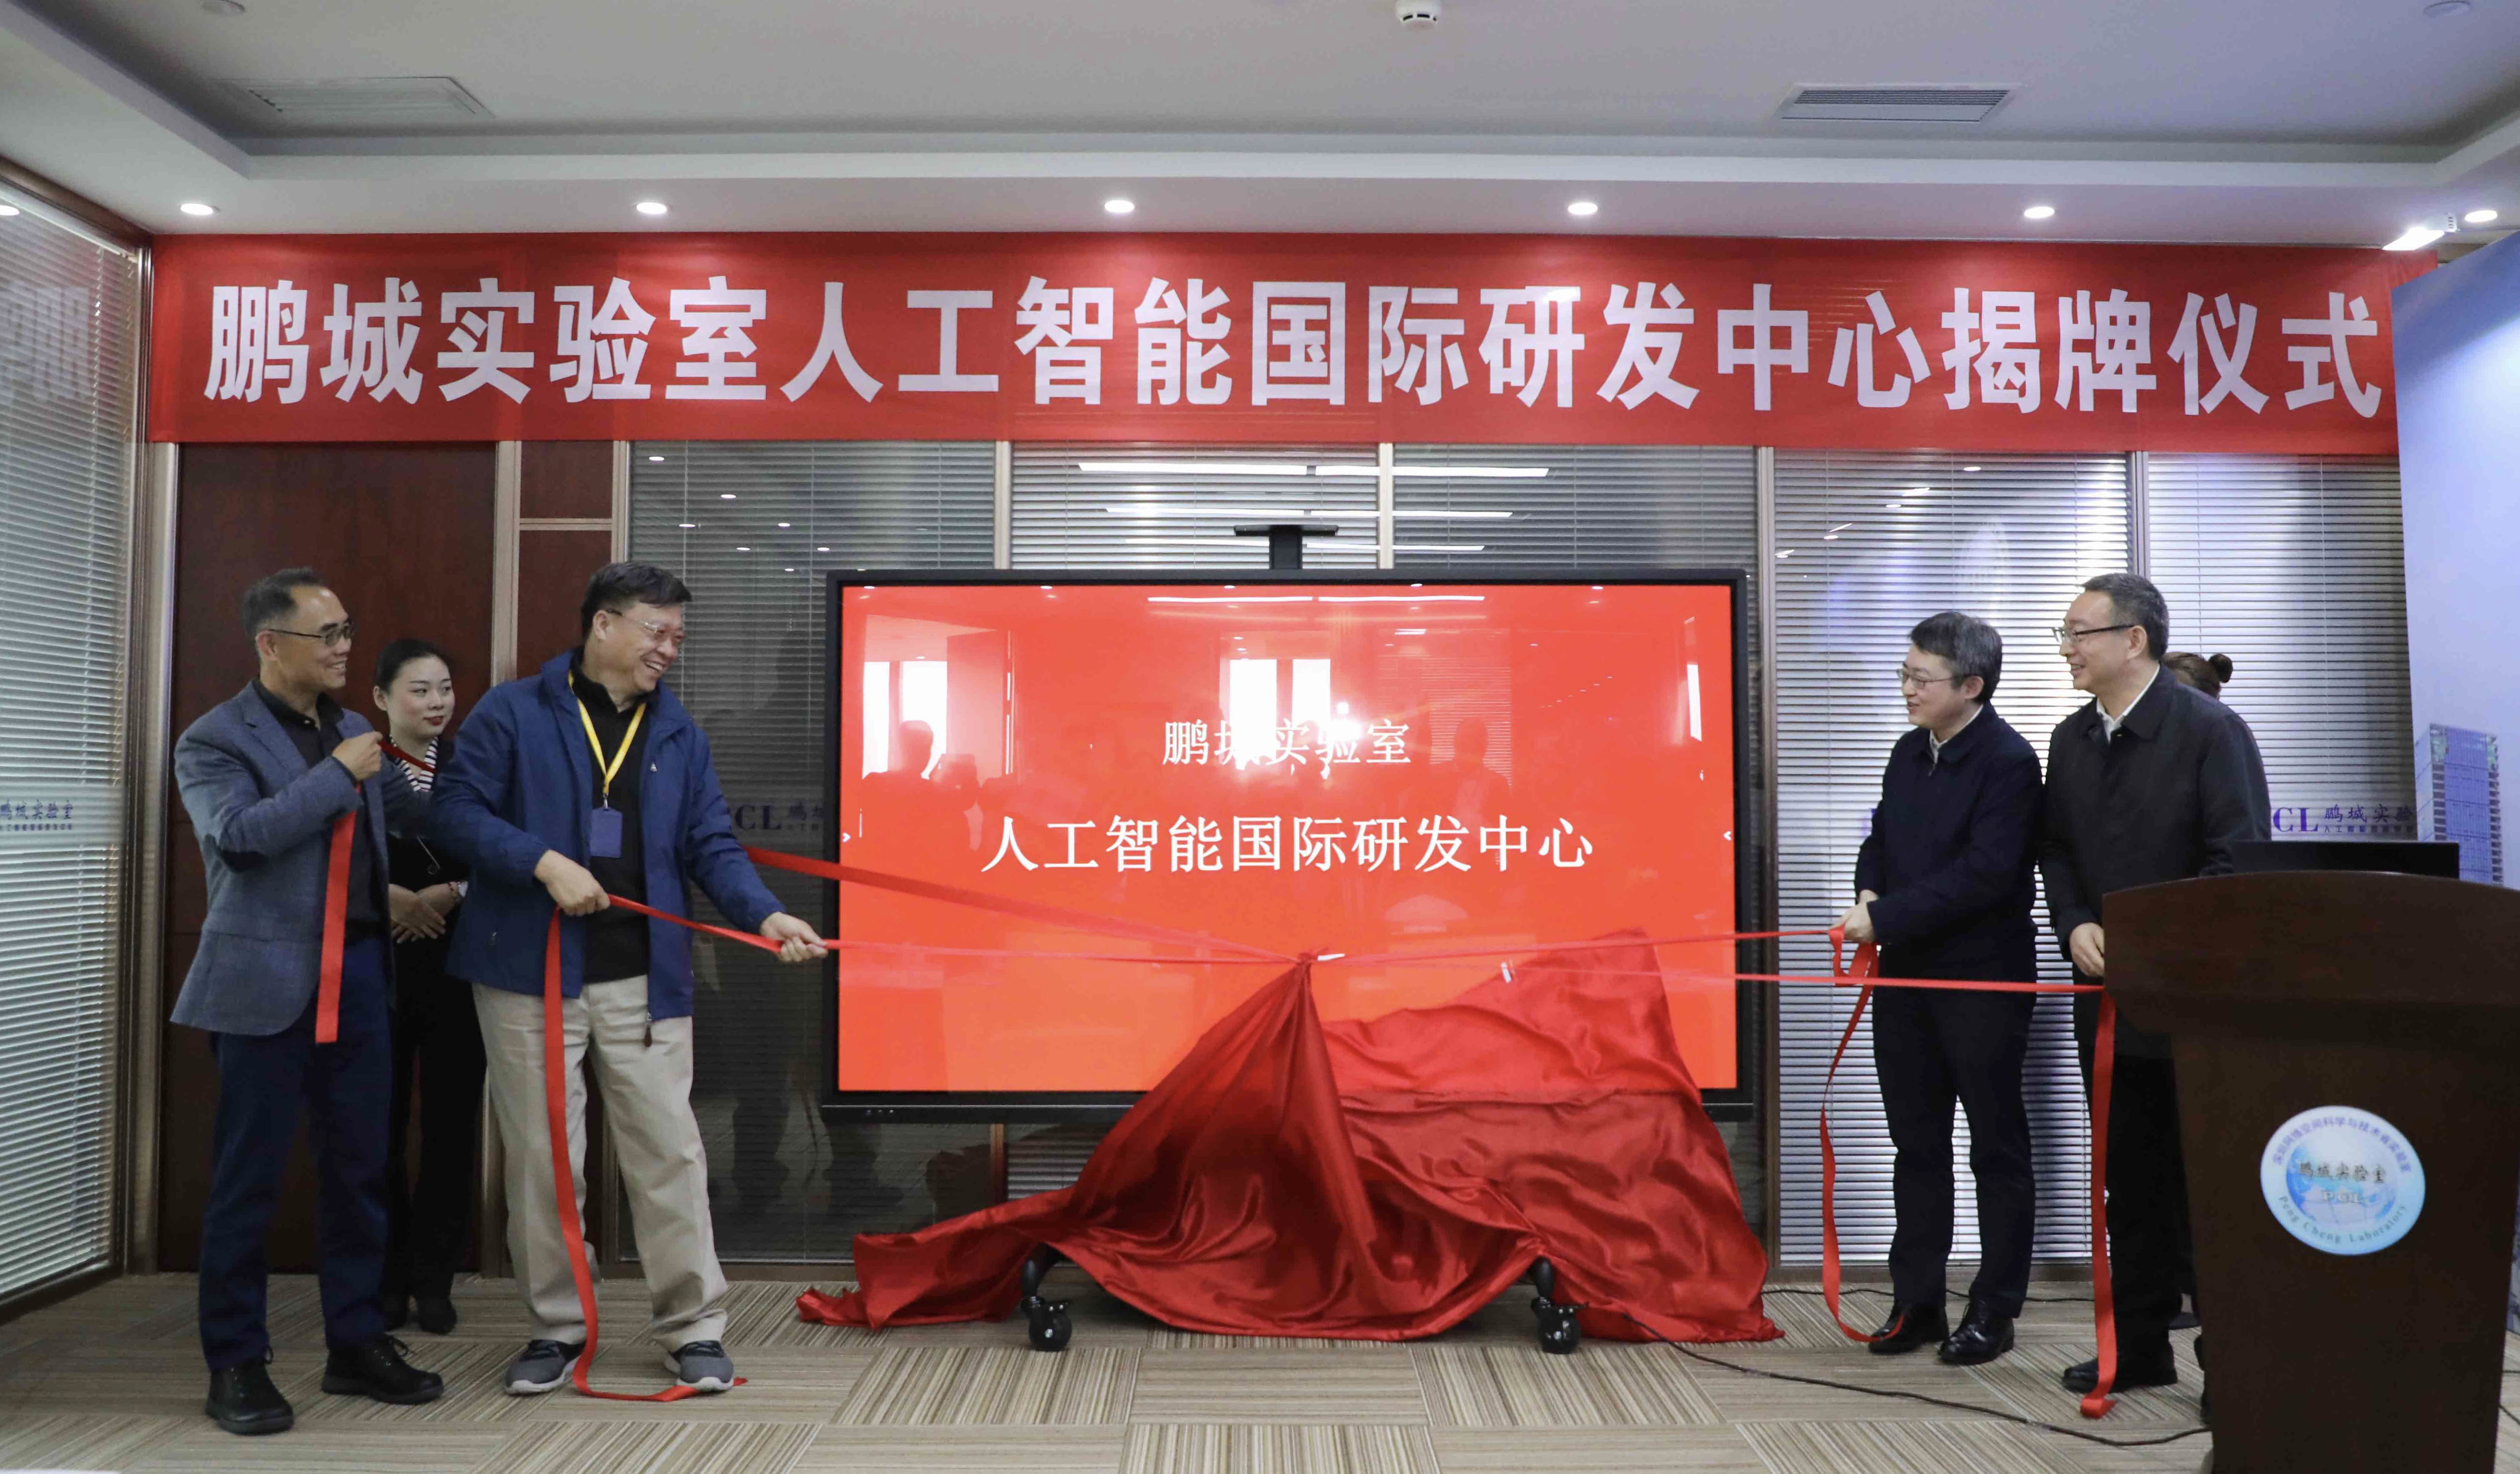 鹏城实验室人工智能国际研发中心正式揭牌